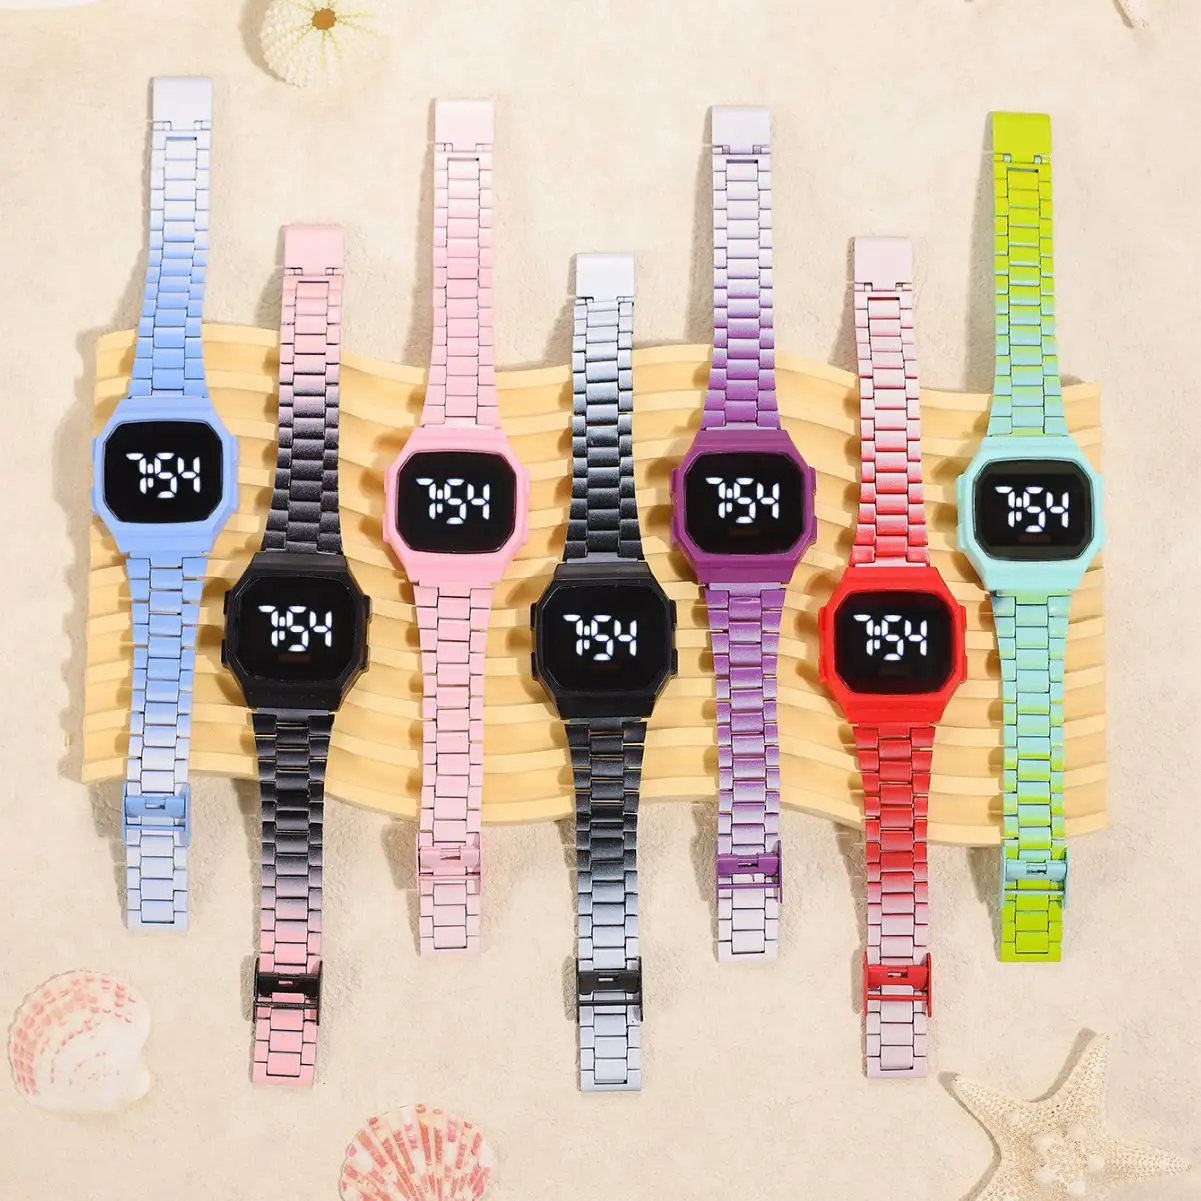 Jam tangan Digital elektronik LED anak-anak Fashion jam tangan olahraga anak bercahaya Led olahraga Reloj grosir permen logam warna-warni